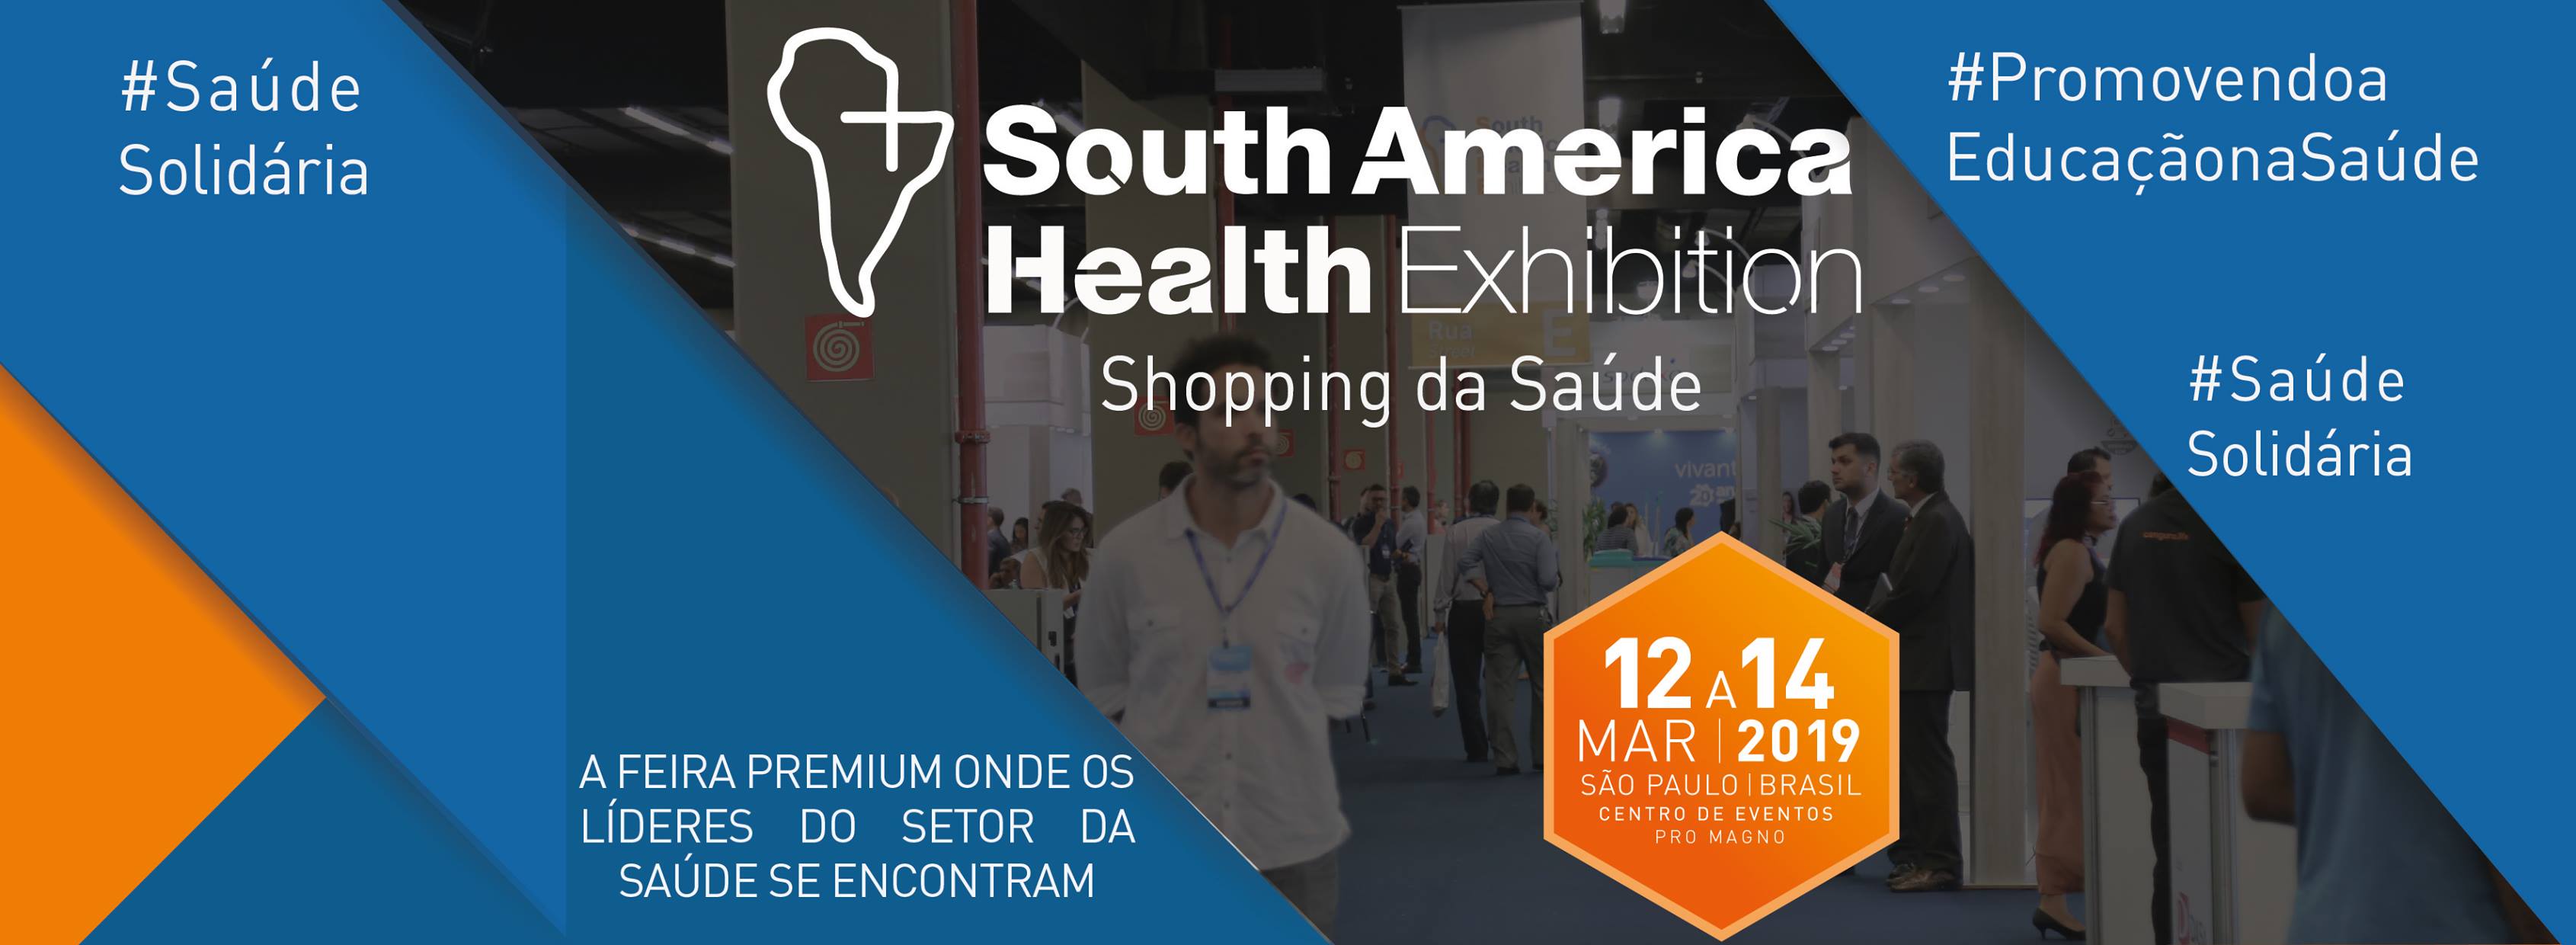 Resultado de imagem para SAHE â South America Health Exhibition